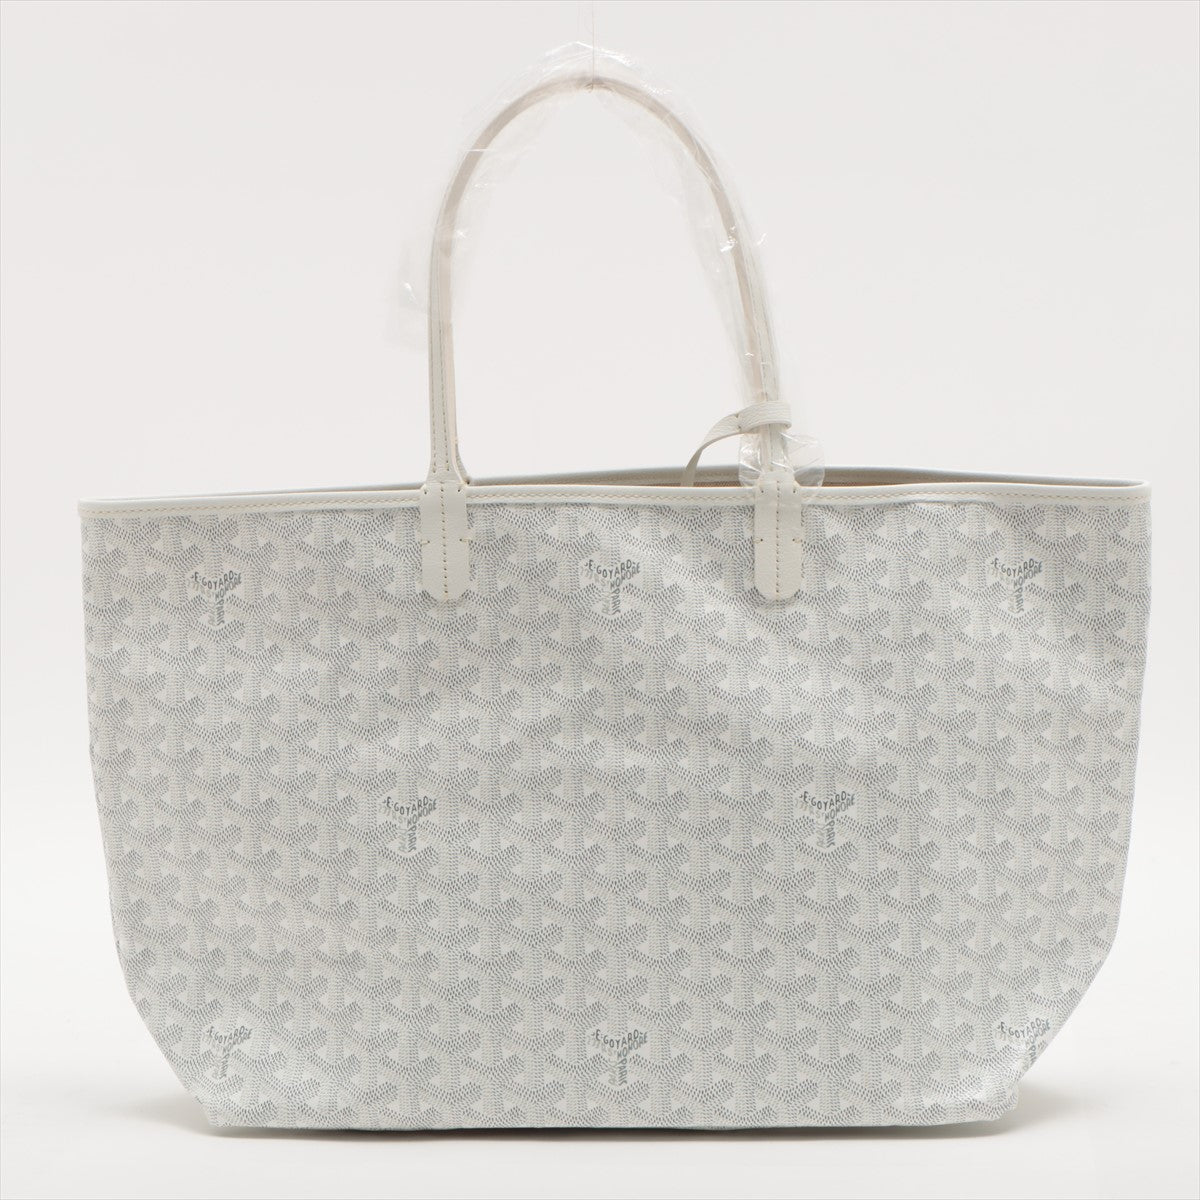 Goyard Goyardine St. Louis PM White/Grey Tote Bag - Meghan Markle's  Handbags - Meghan's Fashion